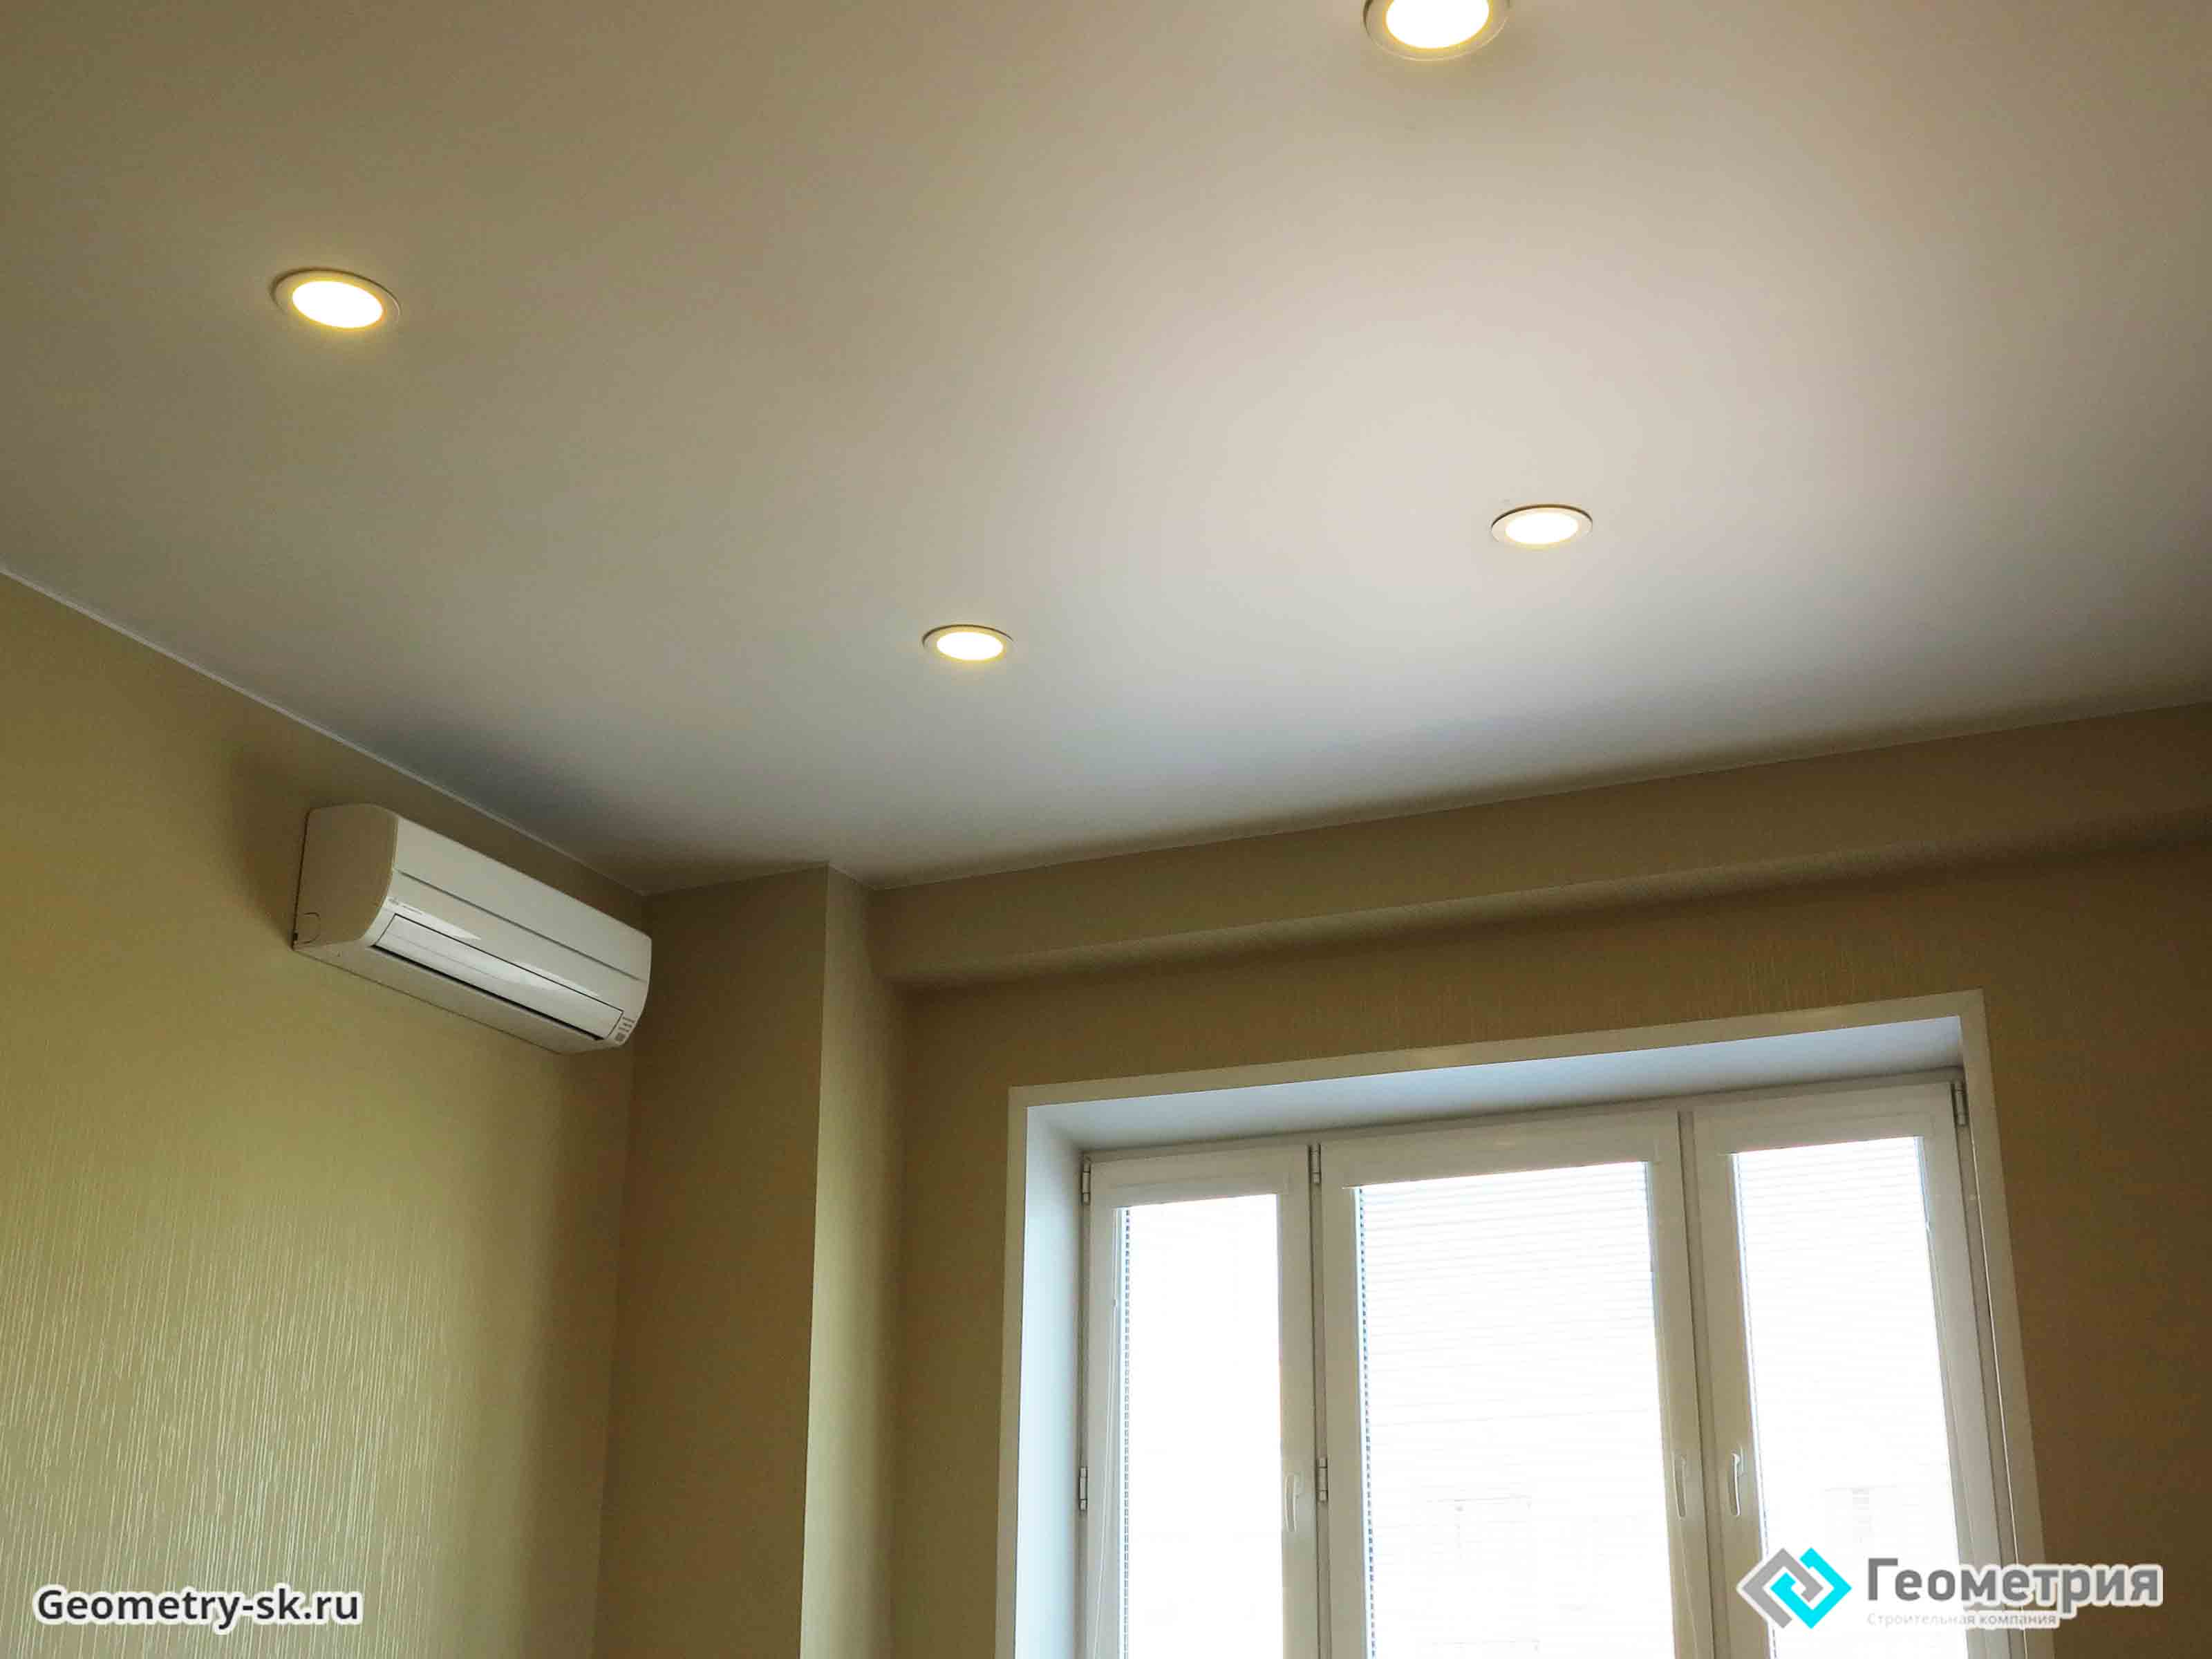 Установка точечных светильников в натяжной потолок не отнимет много средств и придаст привлекательный вид